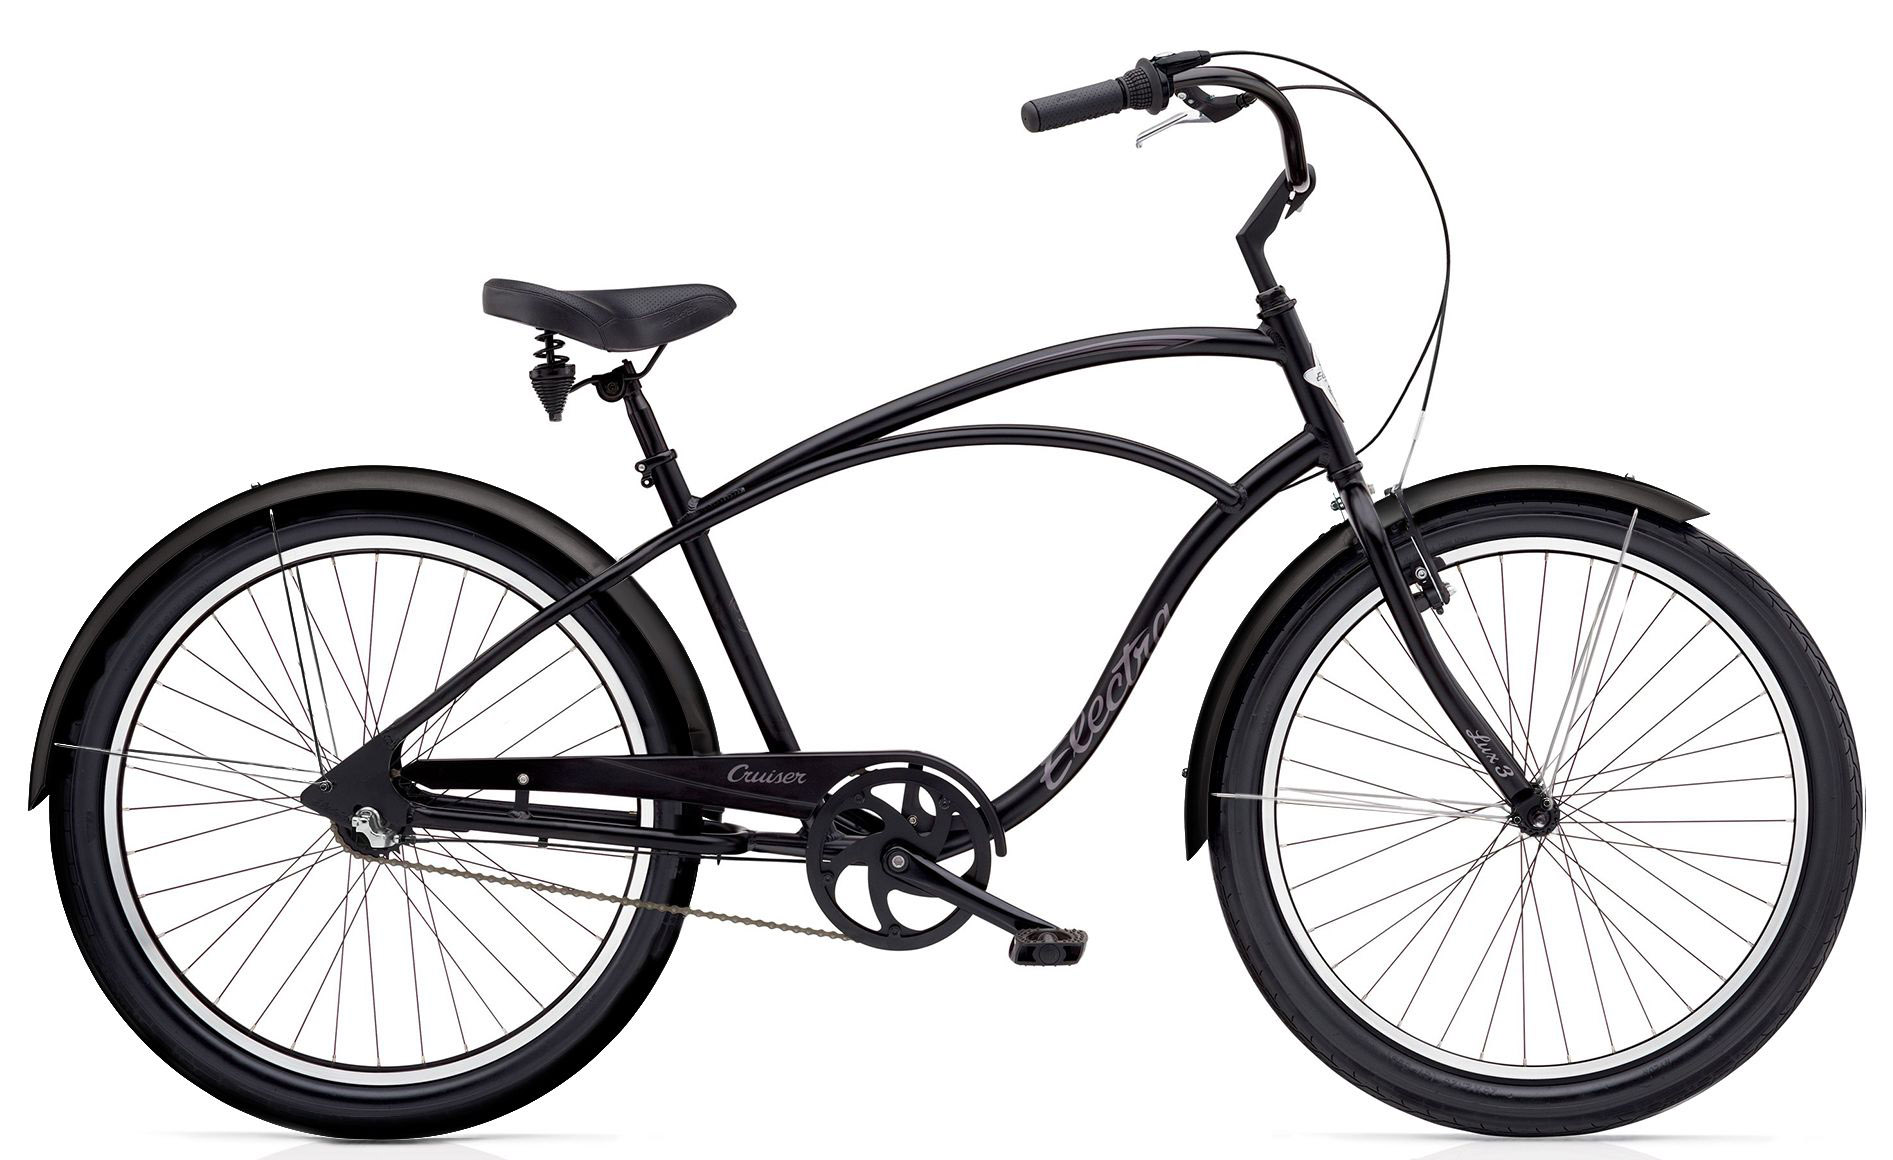  Отзывы о Городском велосипеде Electra Cruiser Lux 3i Mens 2020